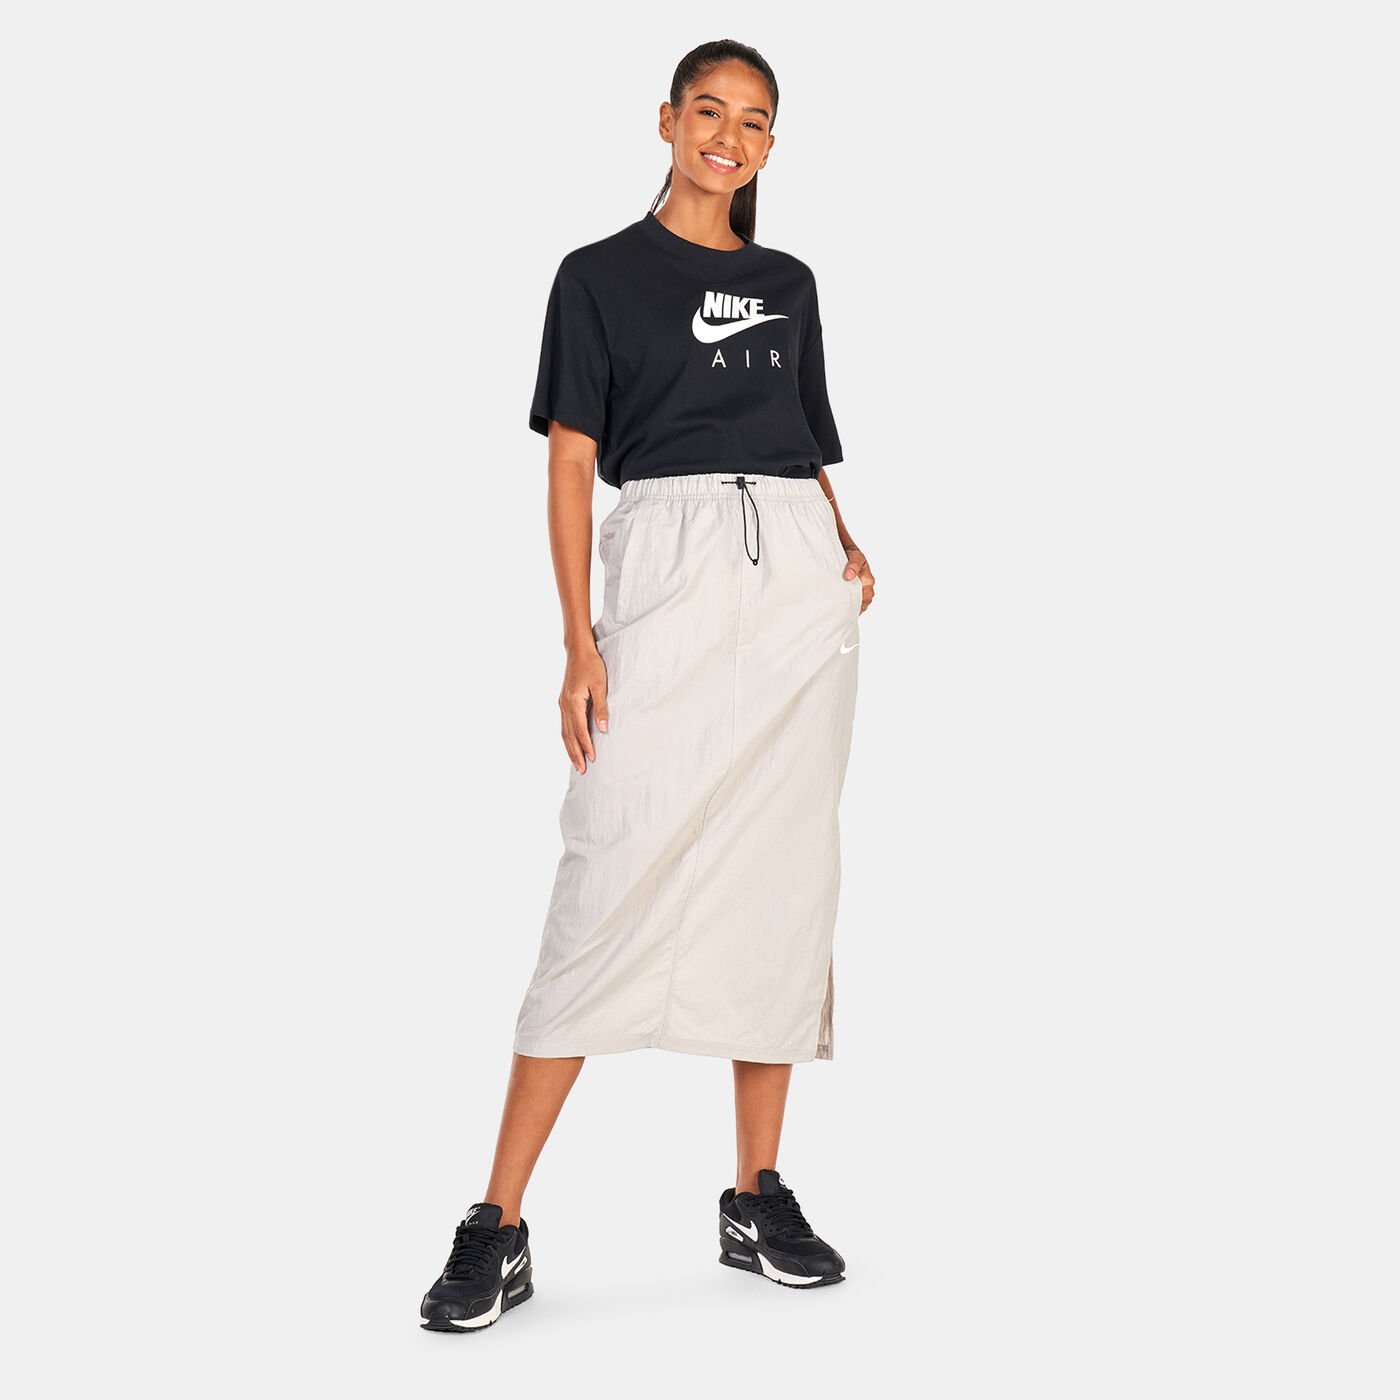 Women's Sportswear Essential High-Waisted Woven Skirt